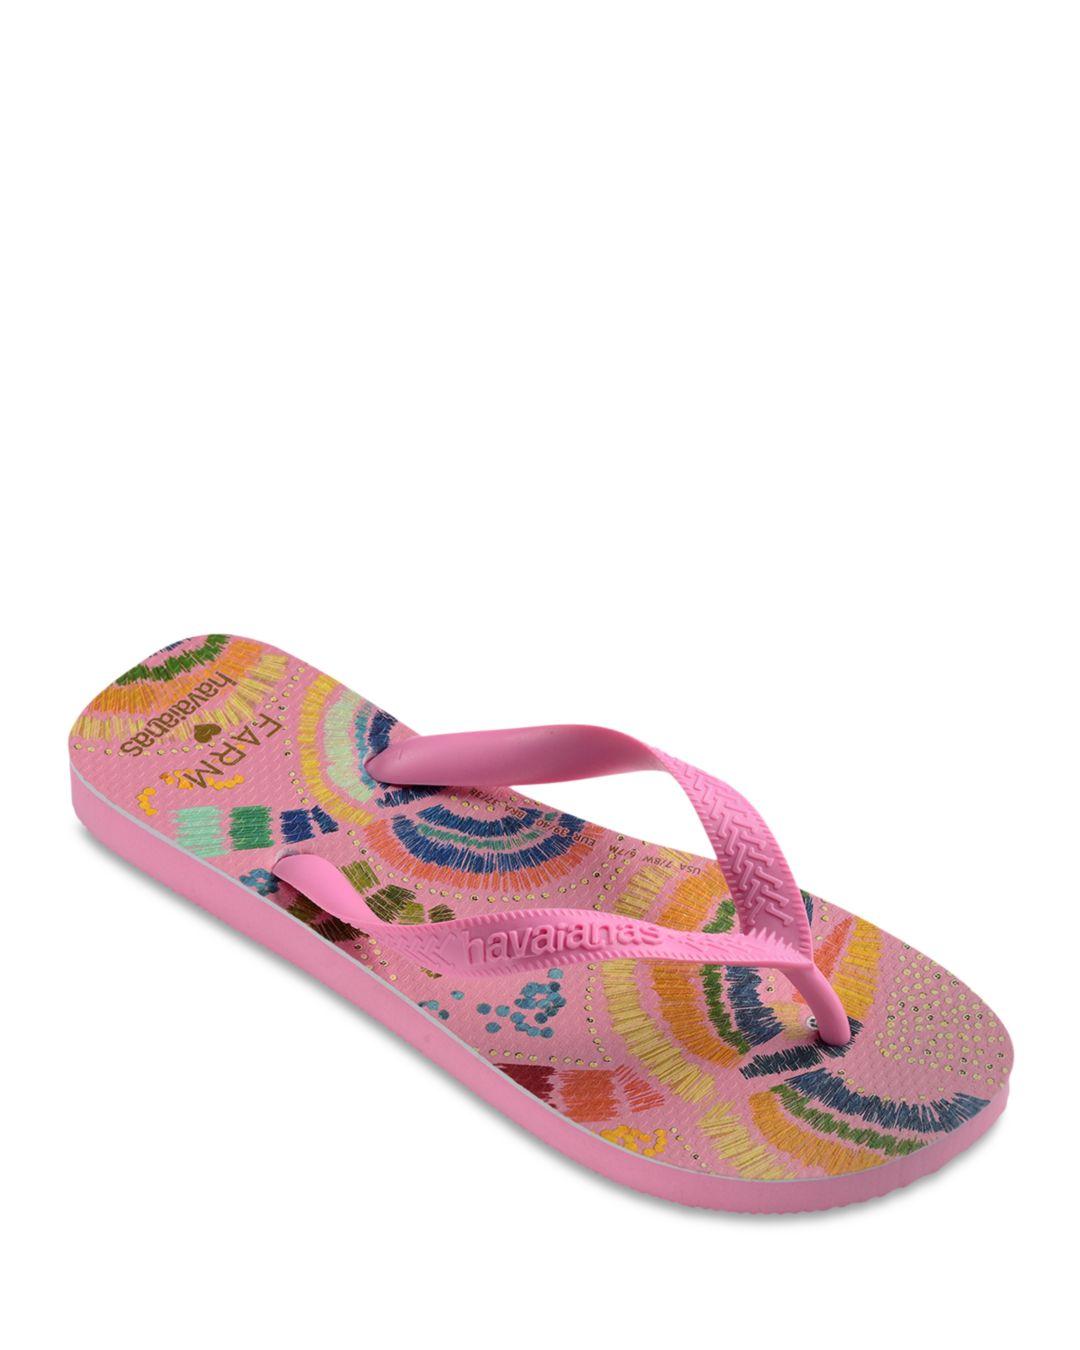 Havaianas Farm Rio Slip On Flip Flop Sandals in Pink | Lyst